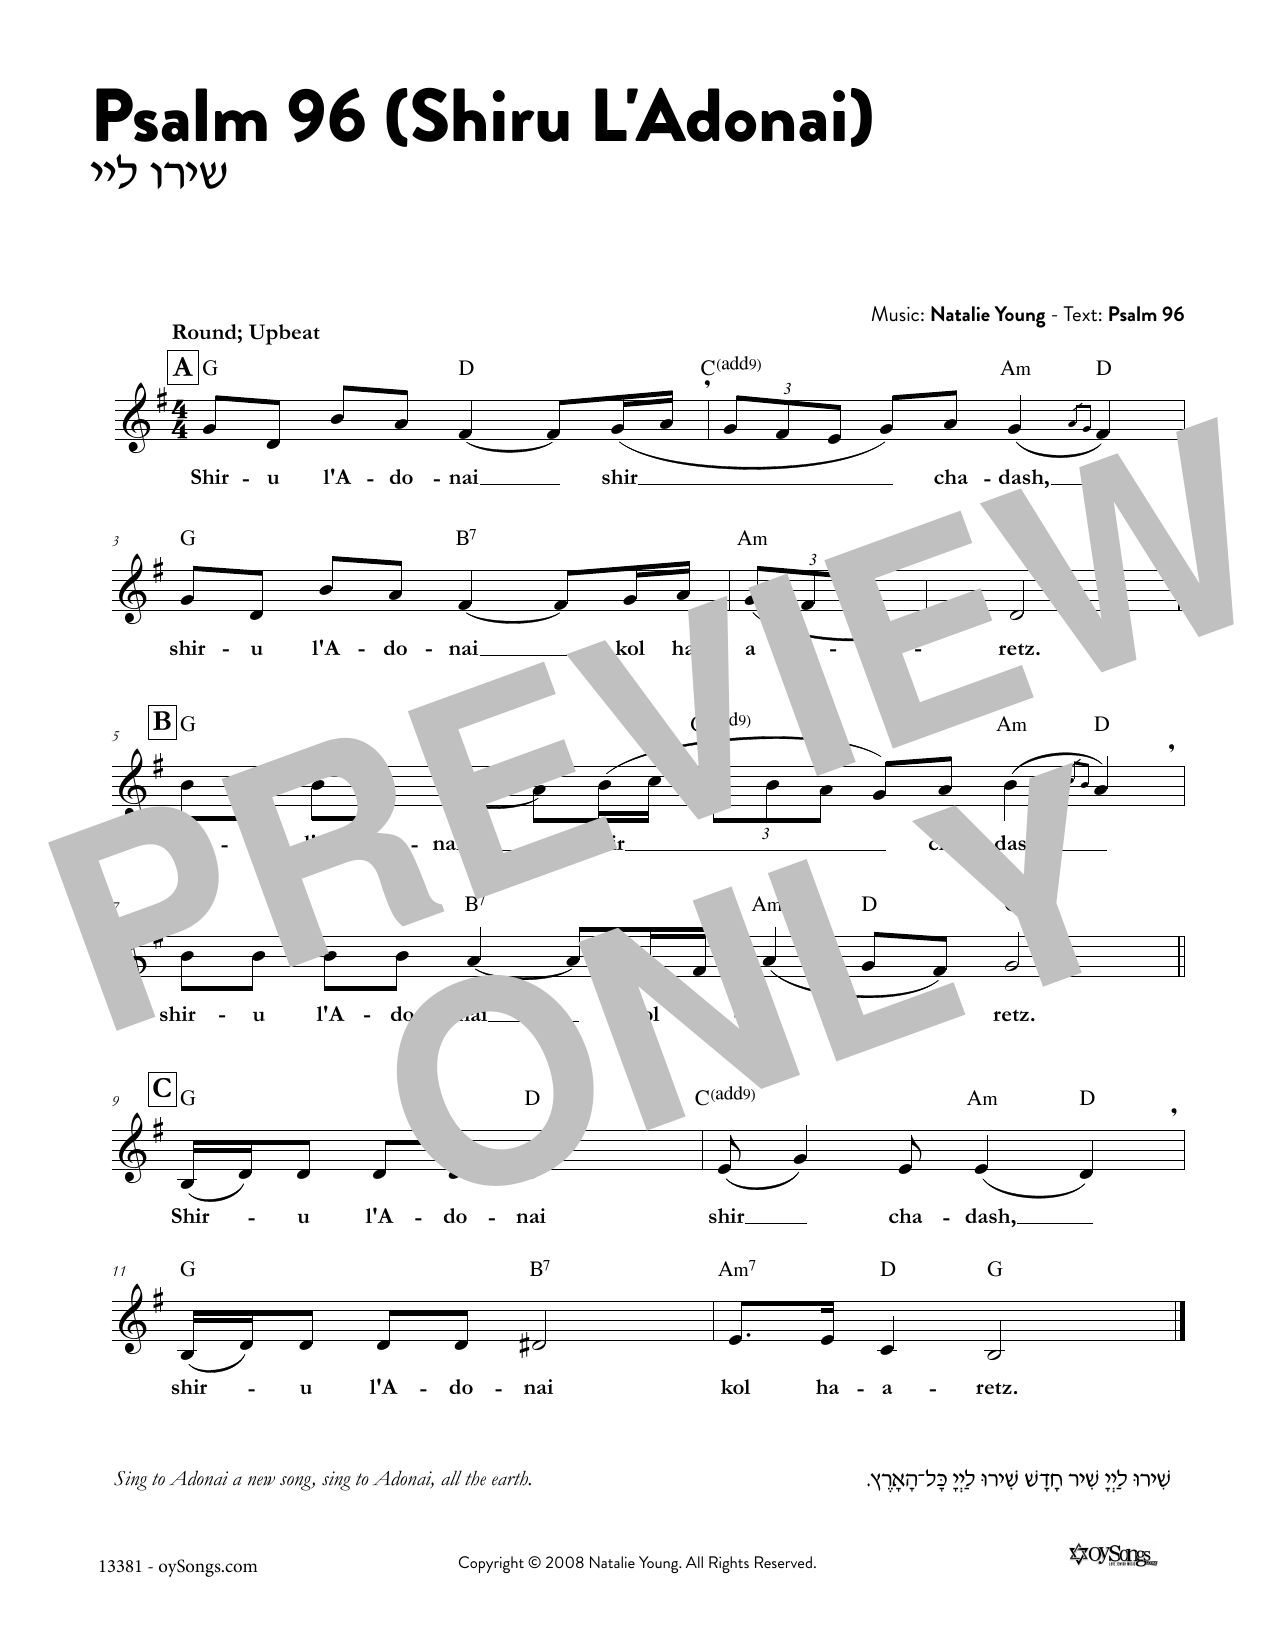 Download Natalie Young Psalm 96 - Shiru L'Adonai Sheet Music